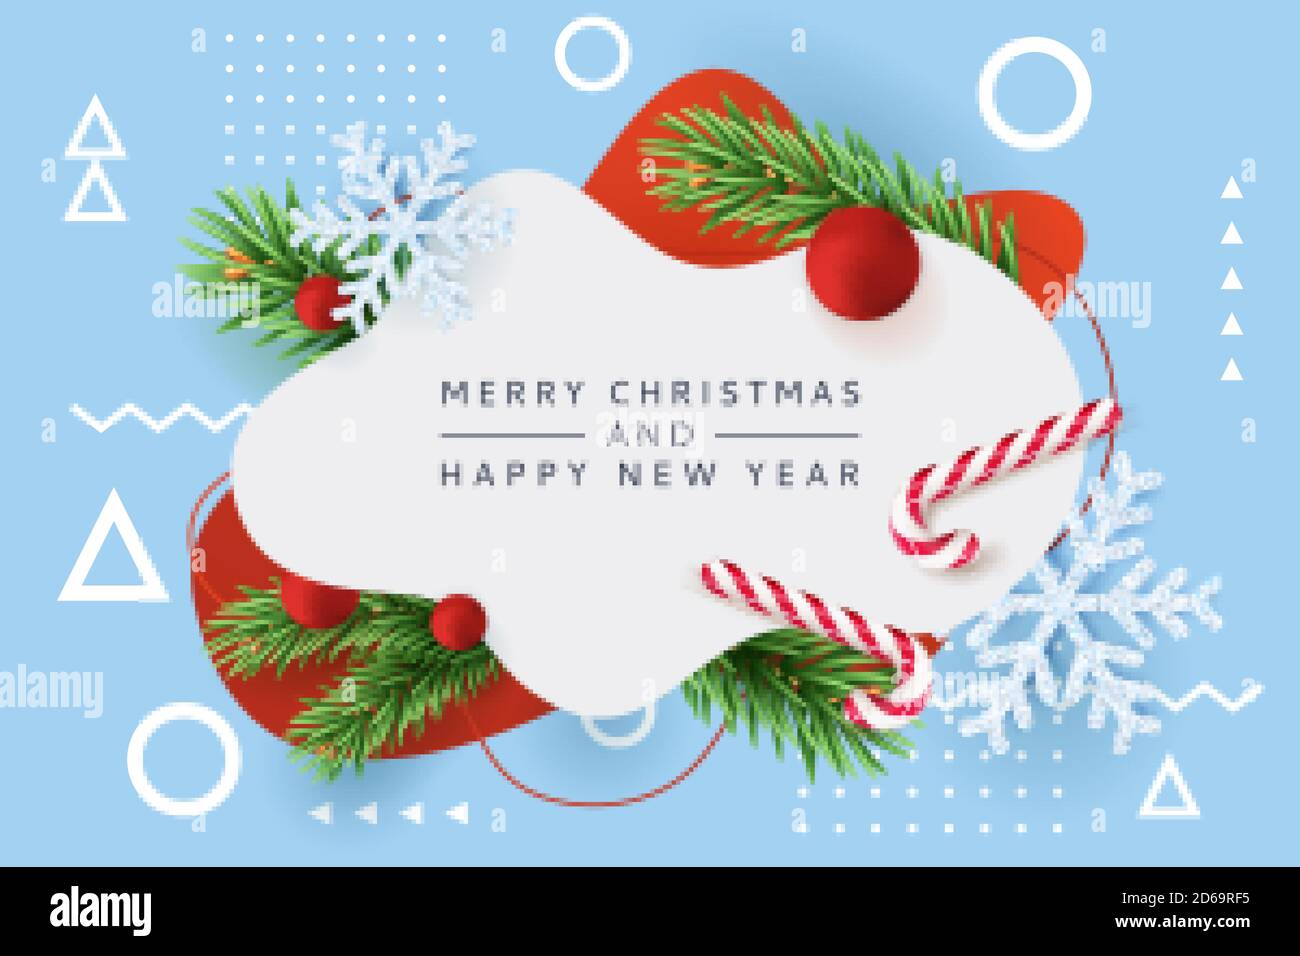 Buon Natale, Felice poster di Capodanno, banner astratto cornice bianca. Vector 3d illustrazione realistica di rami di abete verde, fiocchi di neve, caramelle a strisce Illustrazione Vettoriale